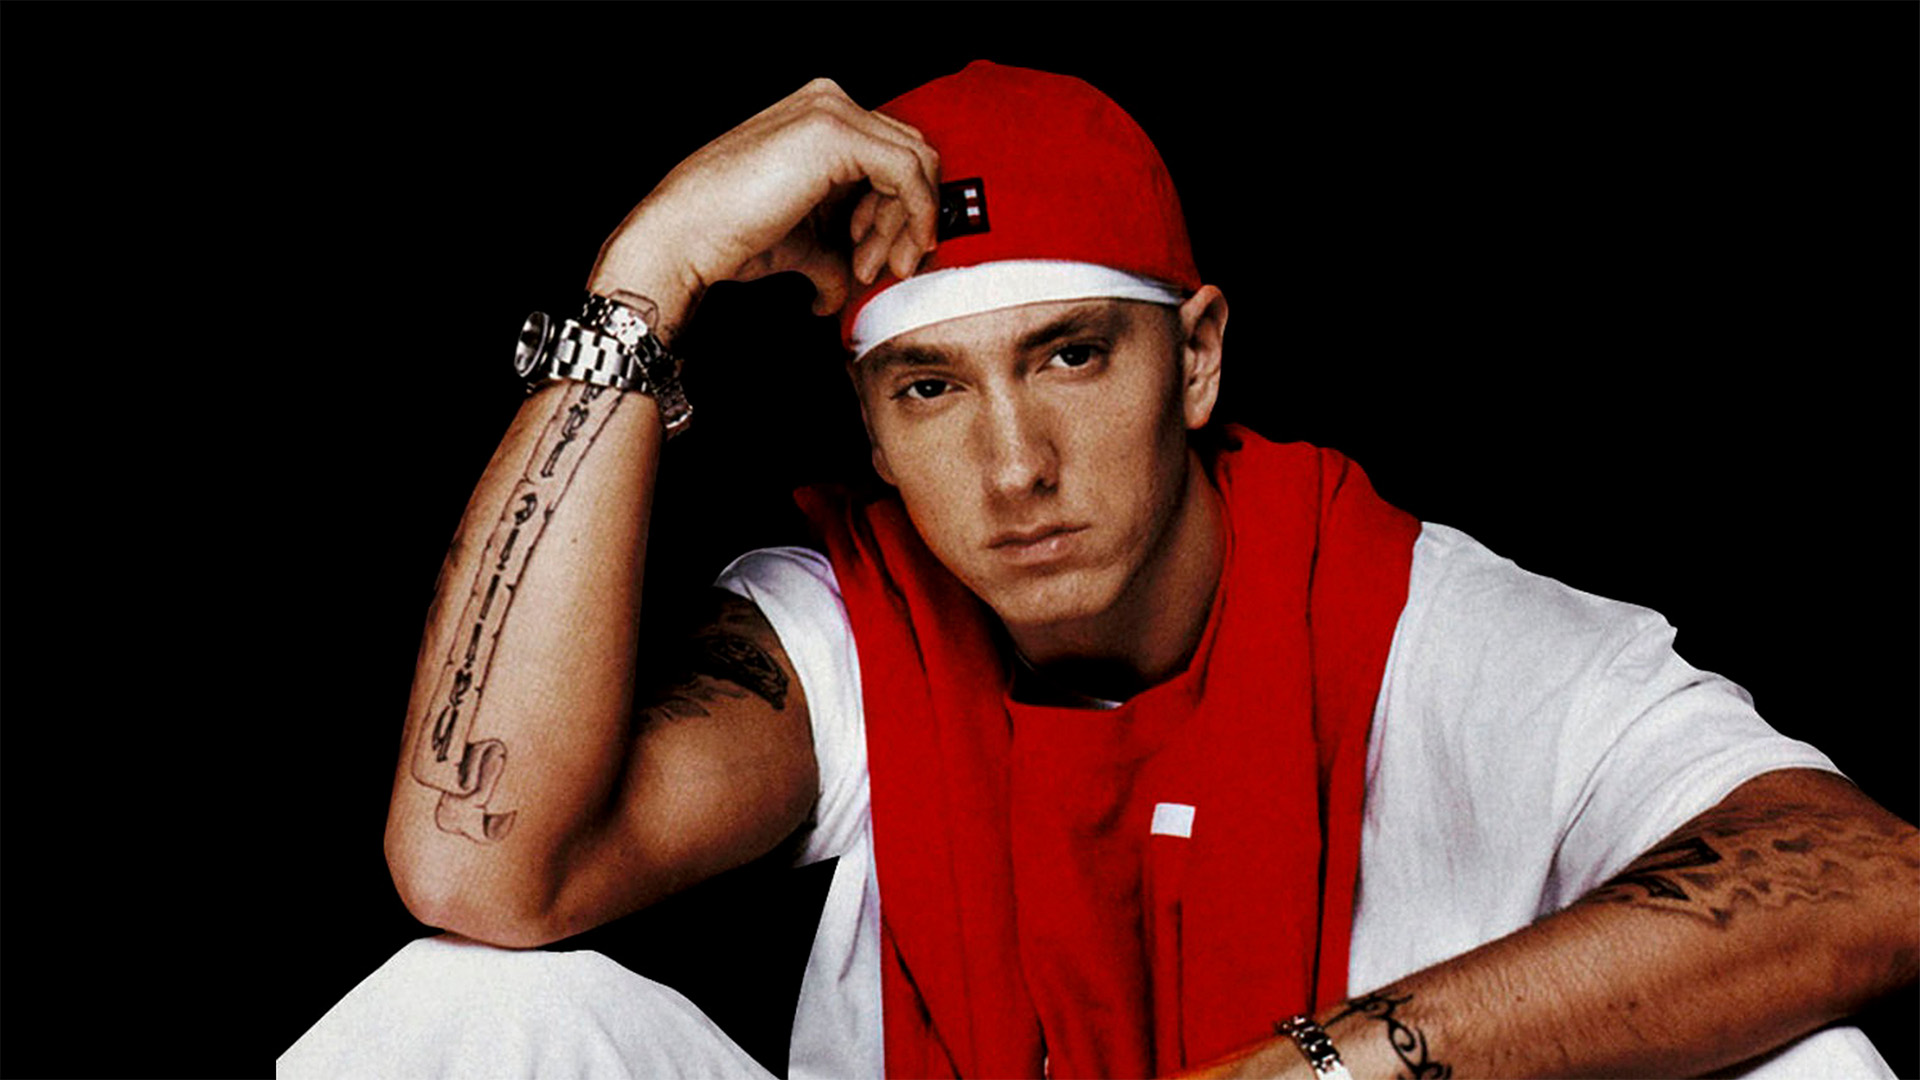 Watch Eminem's Legendary Detroit Show in Ultra HD